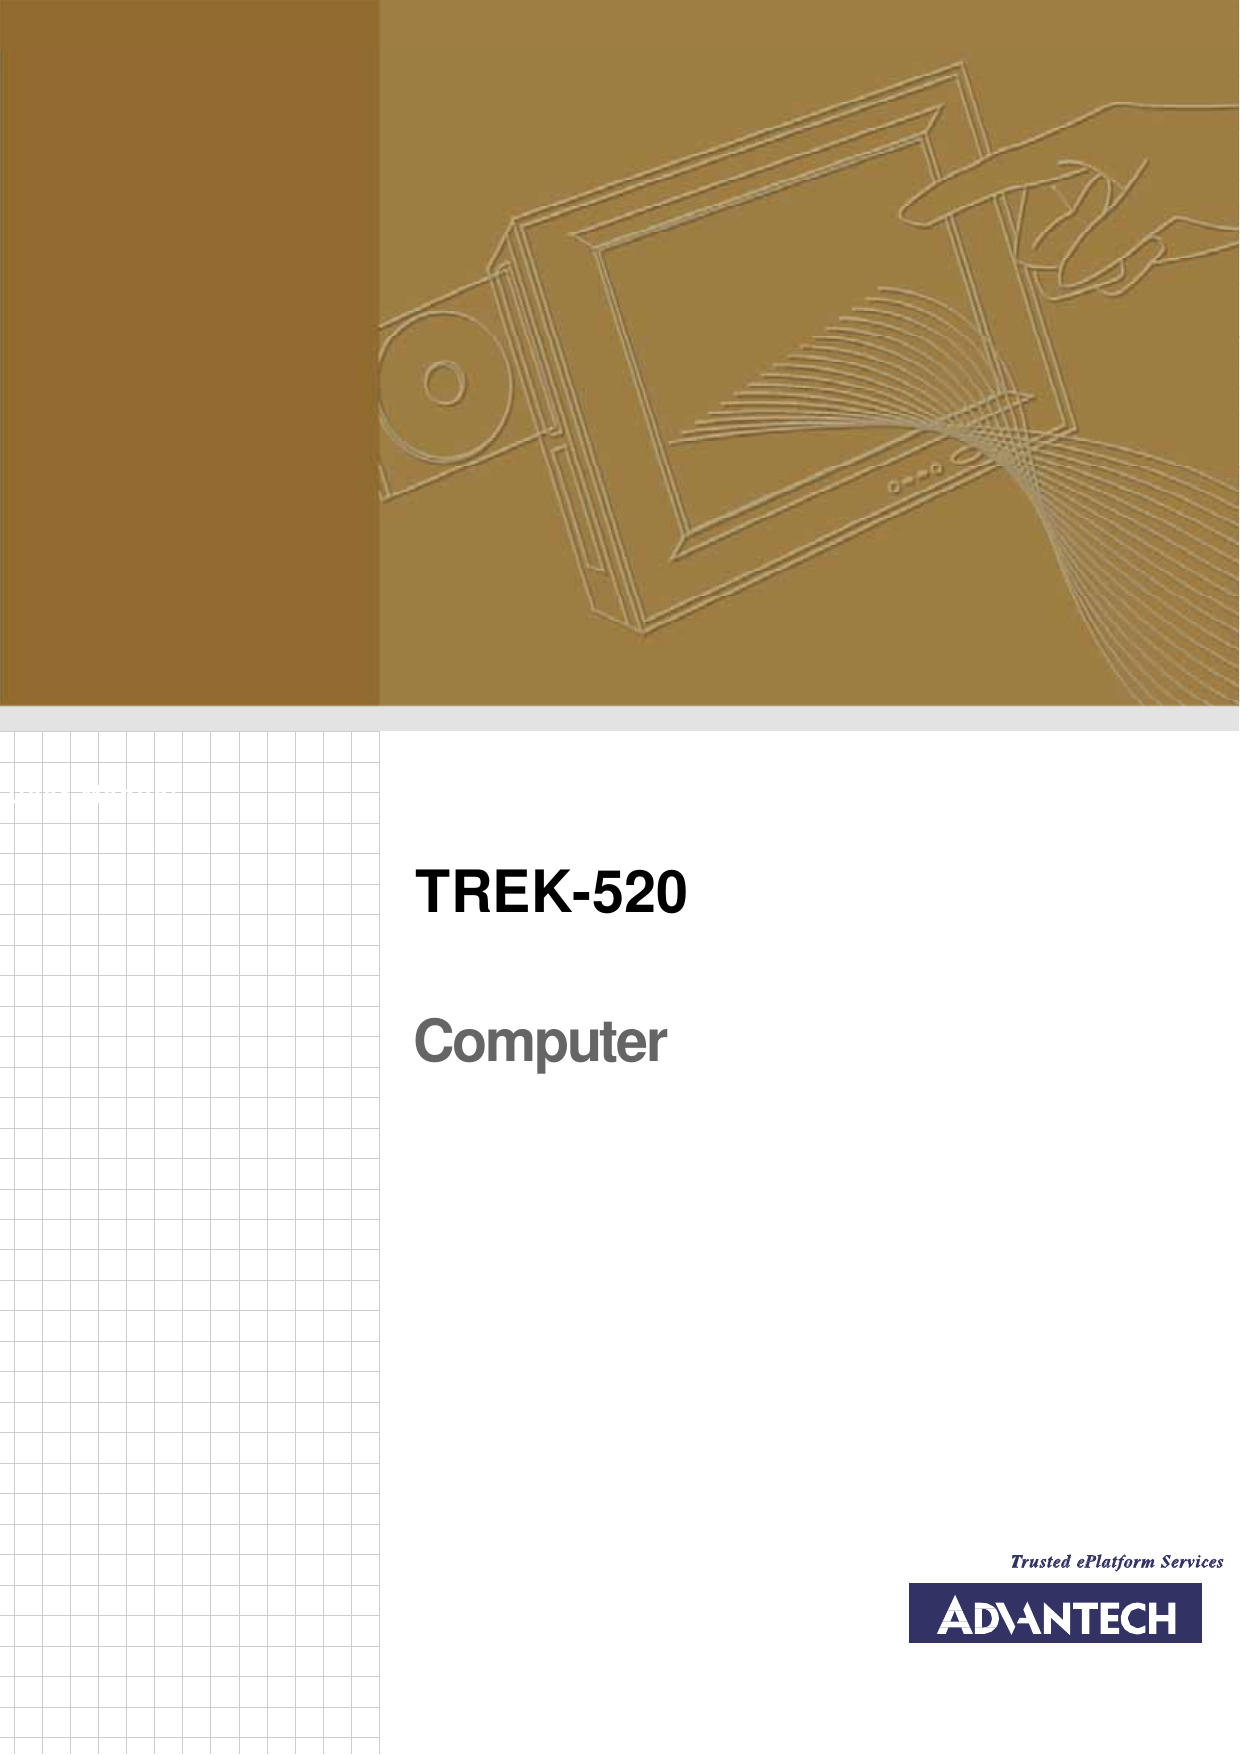         User Manual TREK-520 Computer   